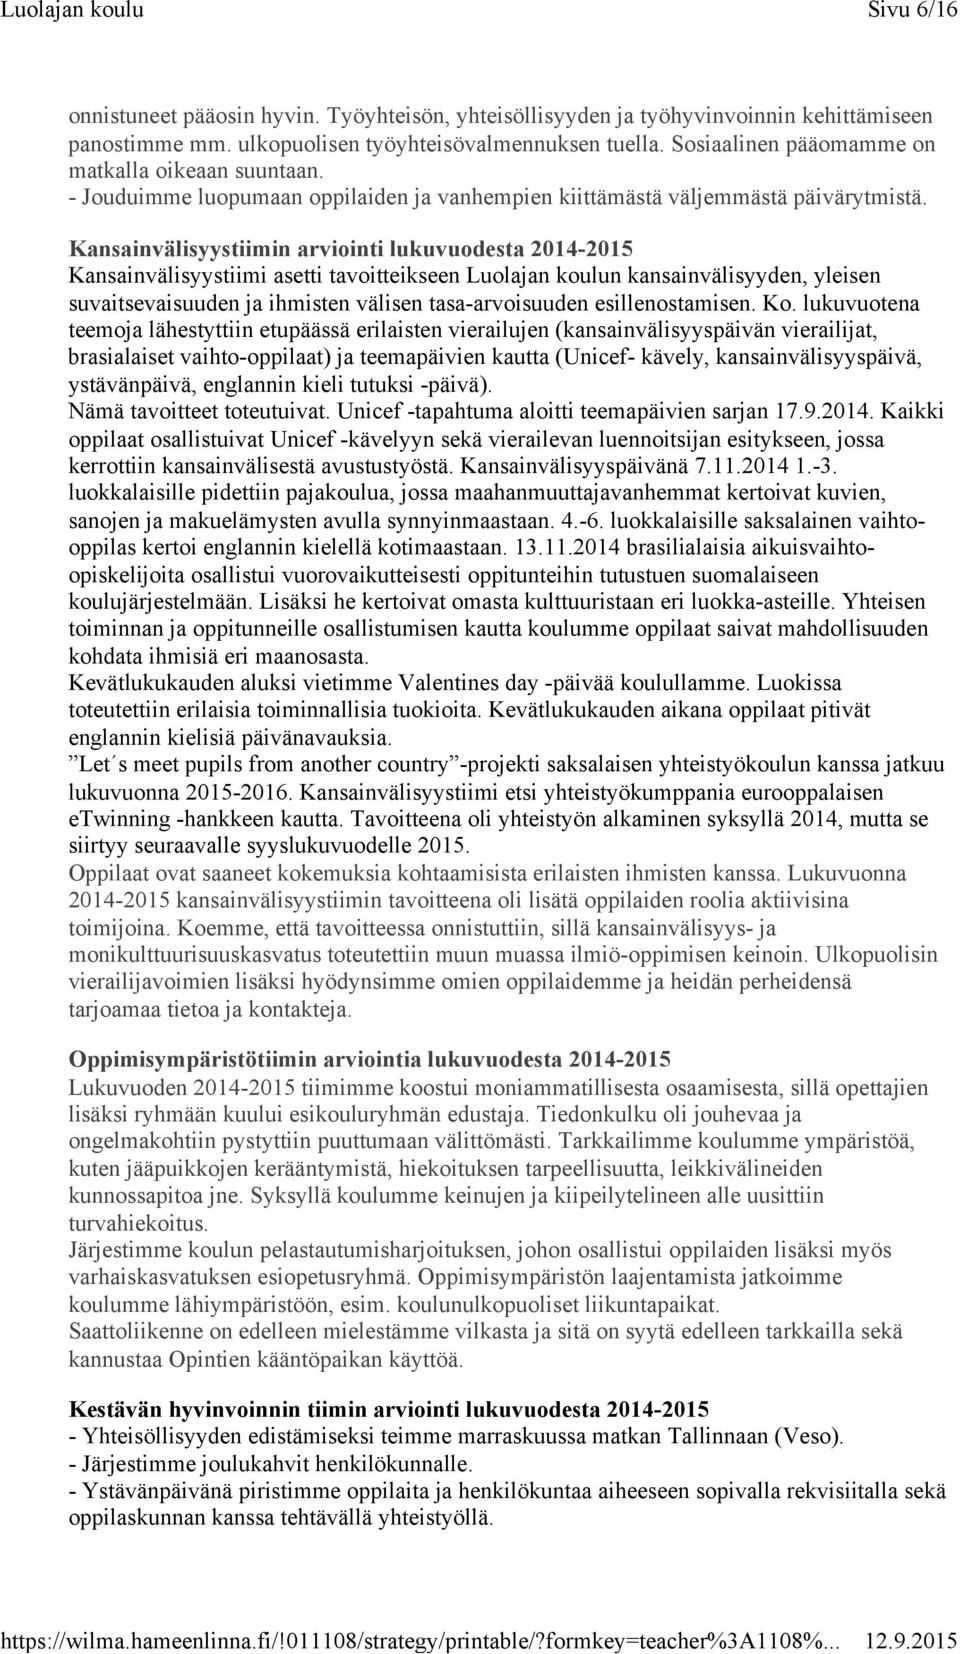 Kansainvälisyystiimin arviointi lukuvuodesta 2014-2015 Kansainvälisyystiimi asetti tavoitteikseen Luolajan koulun kansainvälisyyden, yleisen suvaitsevaisuuden ja ihmisten välisen tasa-arvoisuuden